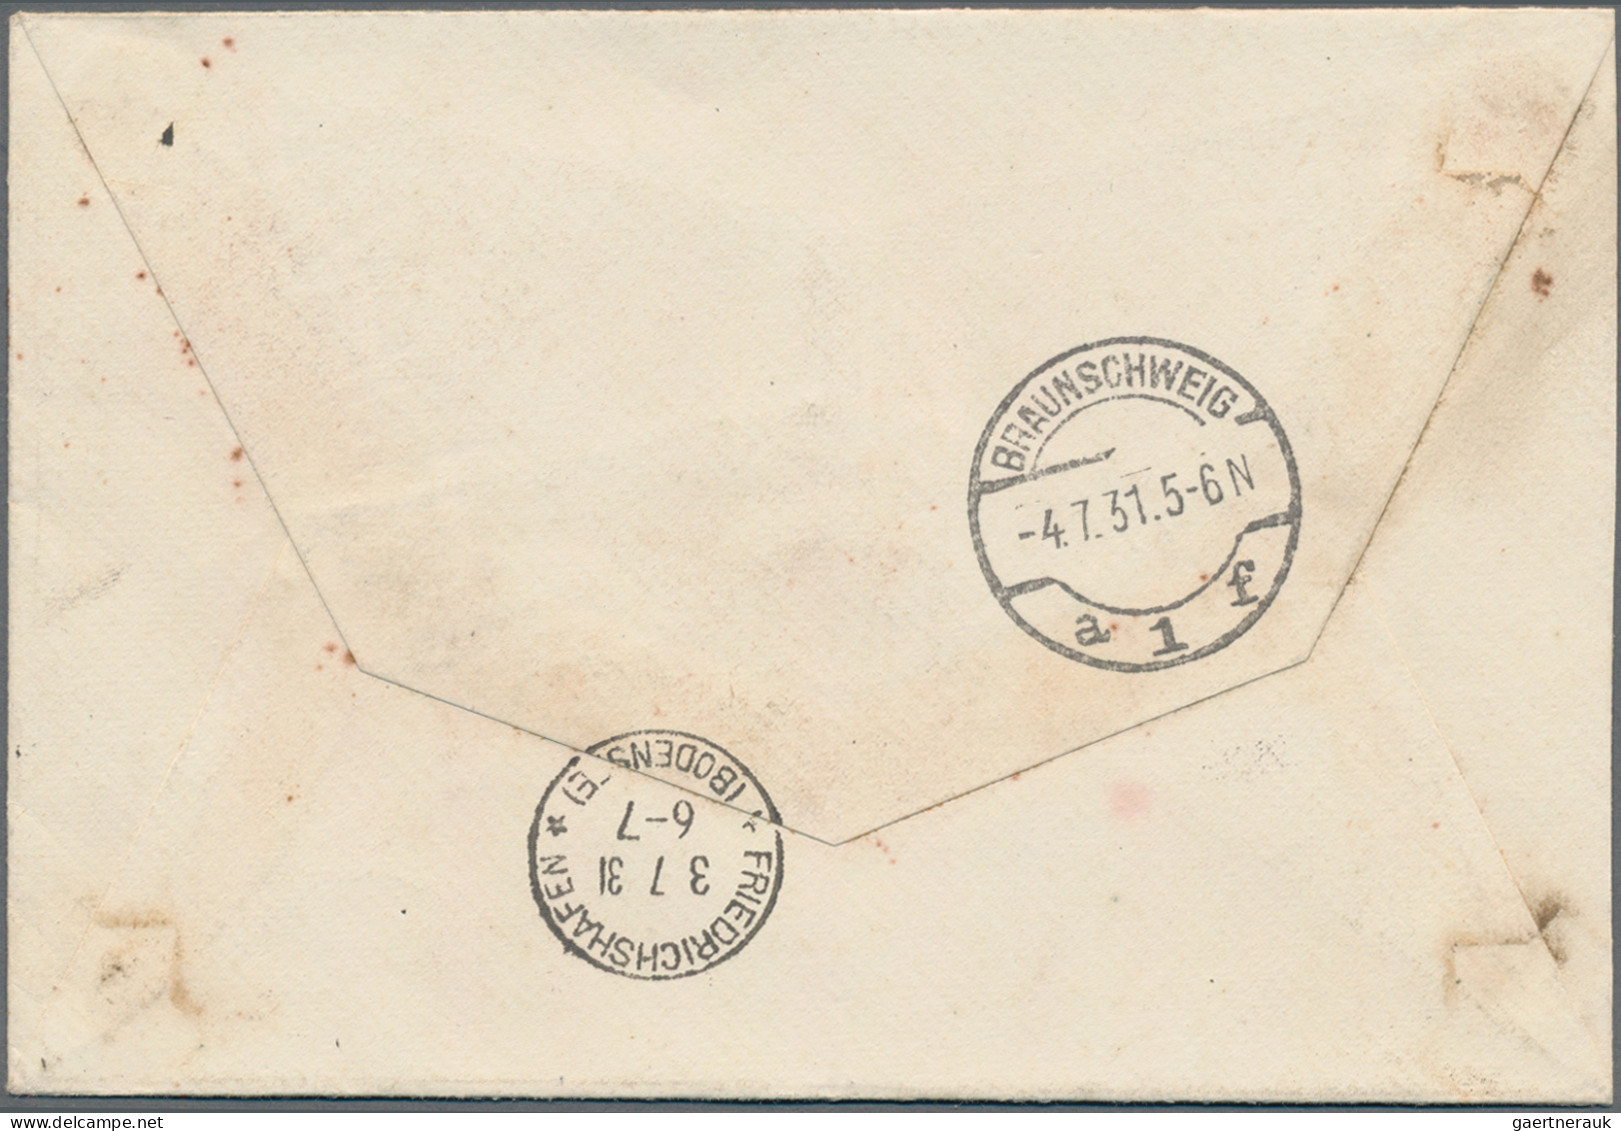 Zeppelin Mail - Europe: 1931, Islandfahrt, Schöner R-Brief Frankiert Mit Zeppeli - Andere-Europa